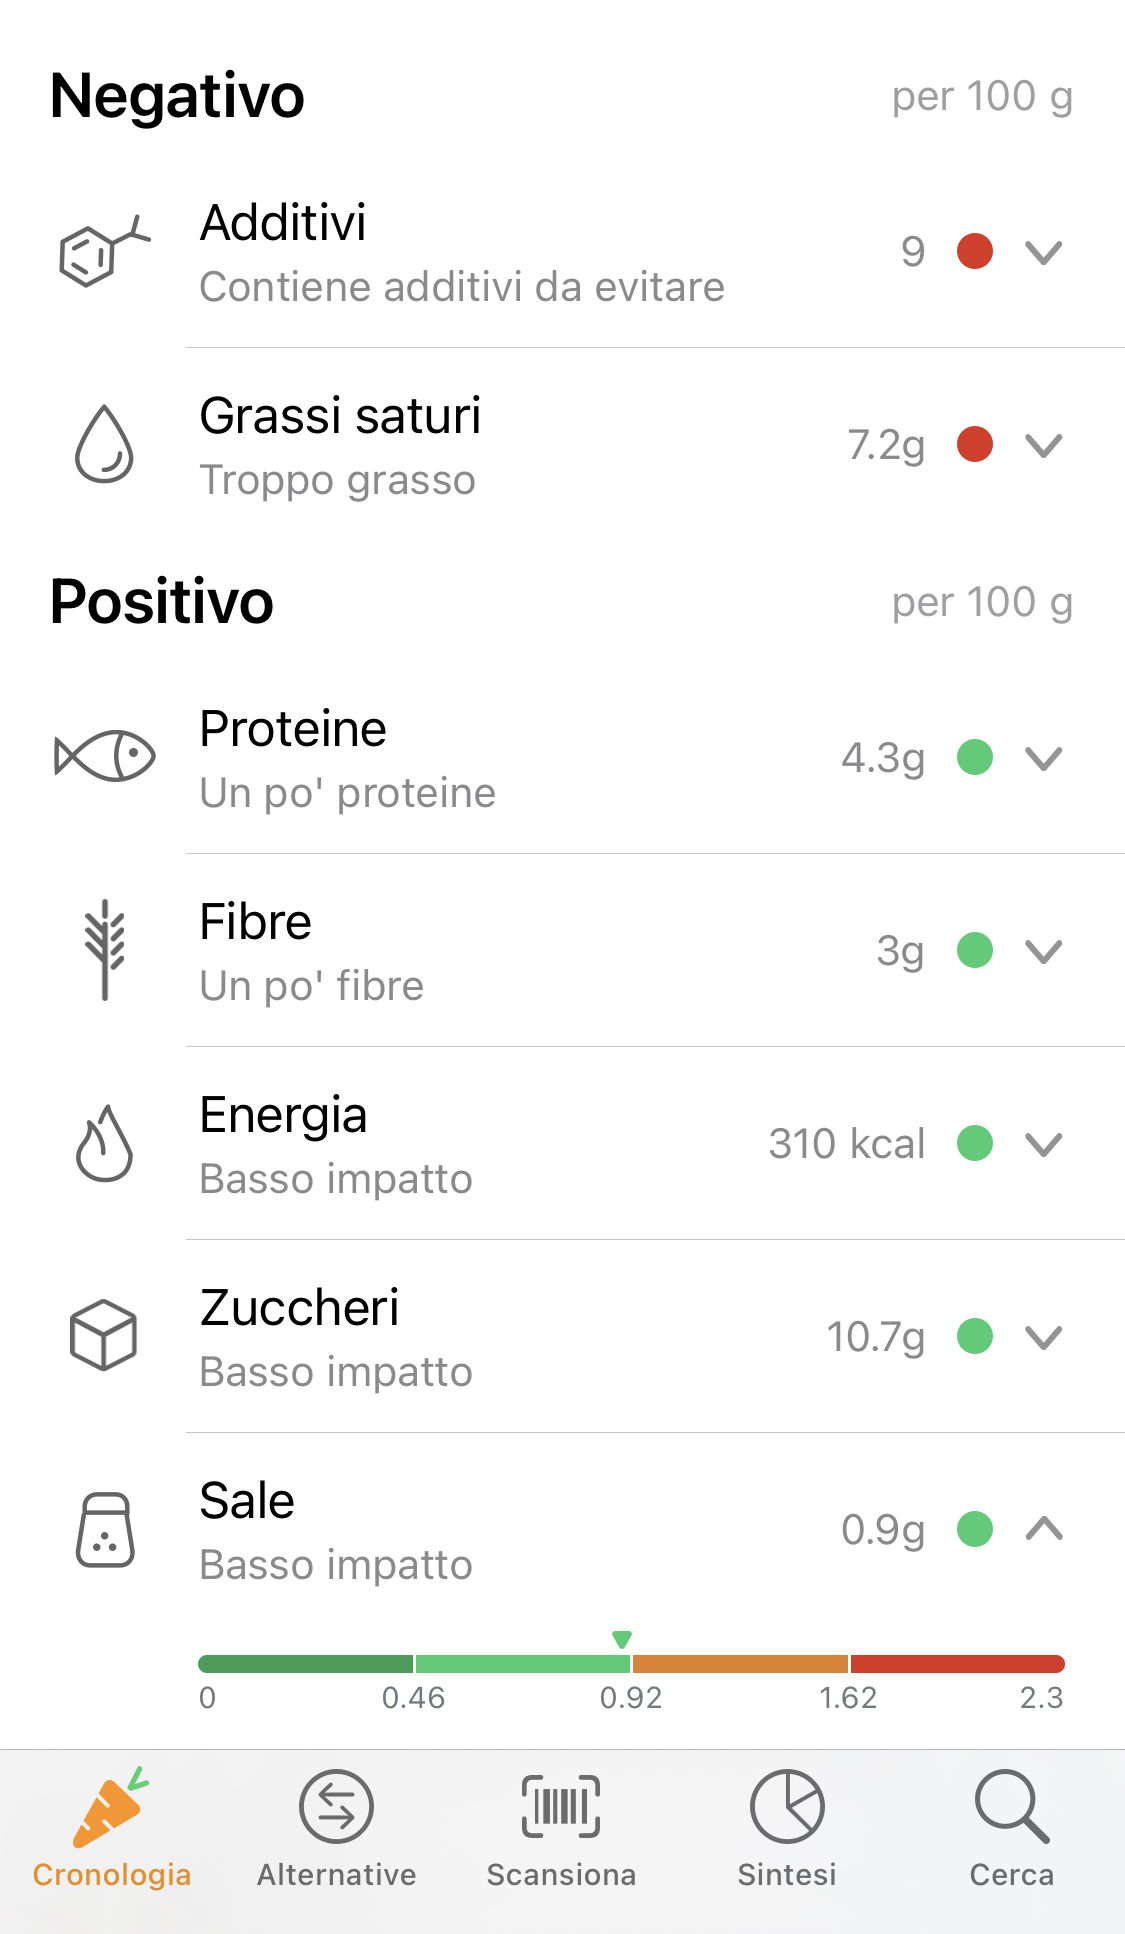 Yuka App - elenco dei valori della "Brioche Siciliana Senza Glutine" della Premiata Pasticceria Trinacria.